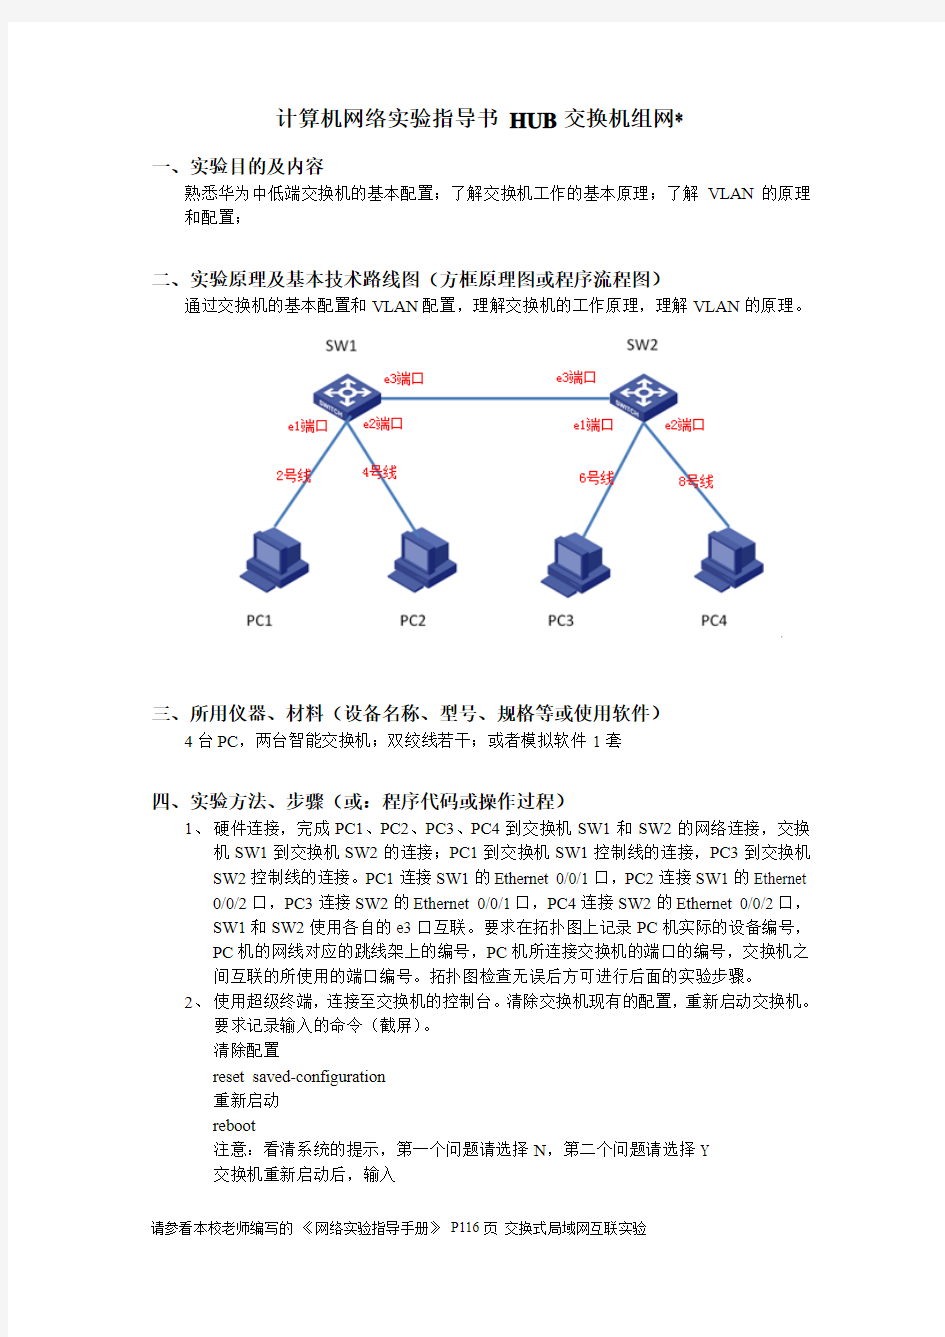 计算机网络-HUB交换机组网实验指导书--华为交换机解析